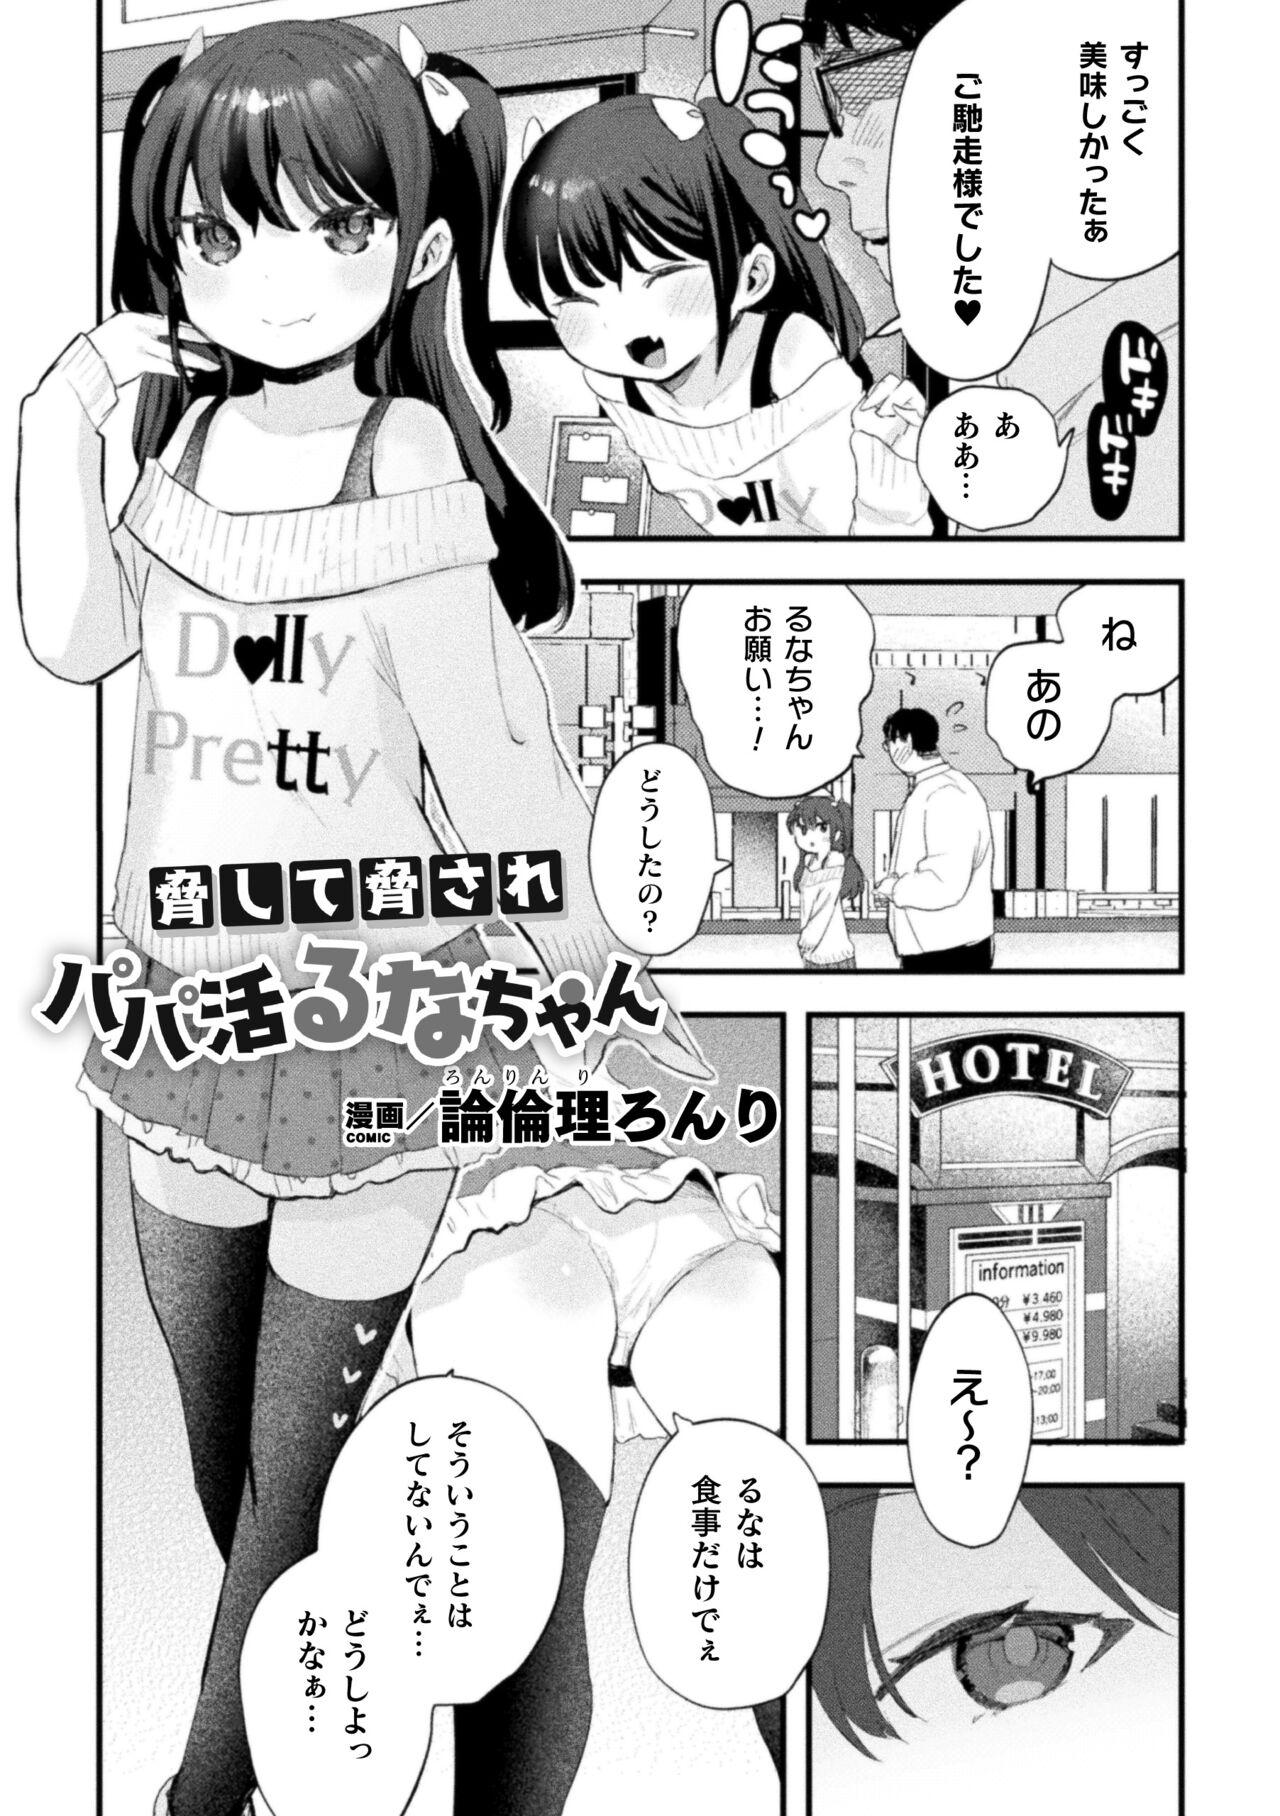 Squirt Nijigen komikku magajin mesugakipapa katsu seisai o teate wa niku bō ikkatsu wakara se harai Vol. 1 Teenfuns - Picture 3